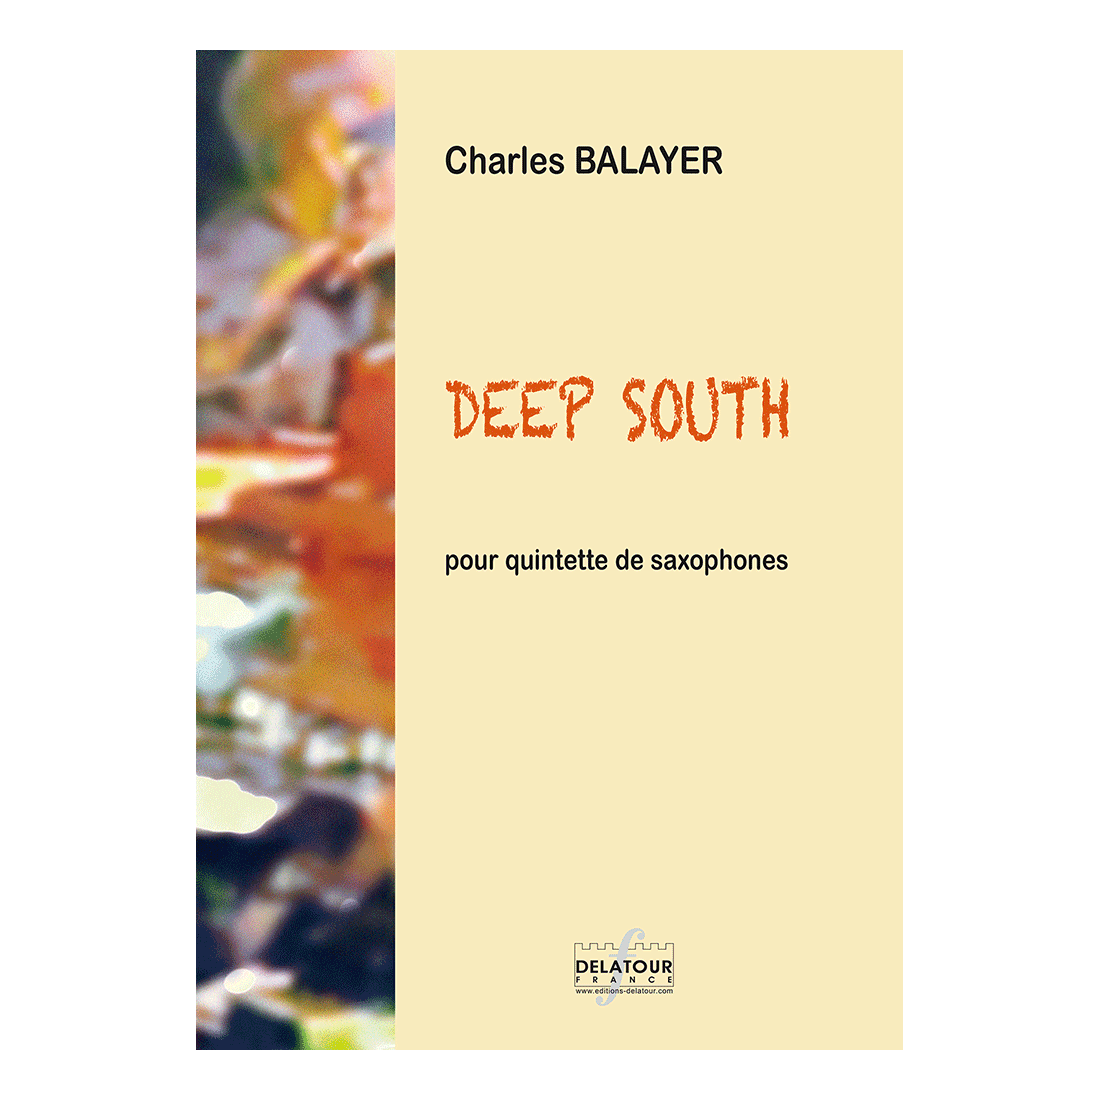 Deep south pour quintette de saxophones